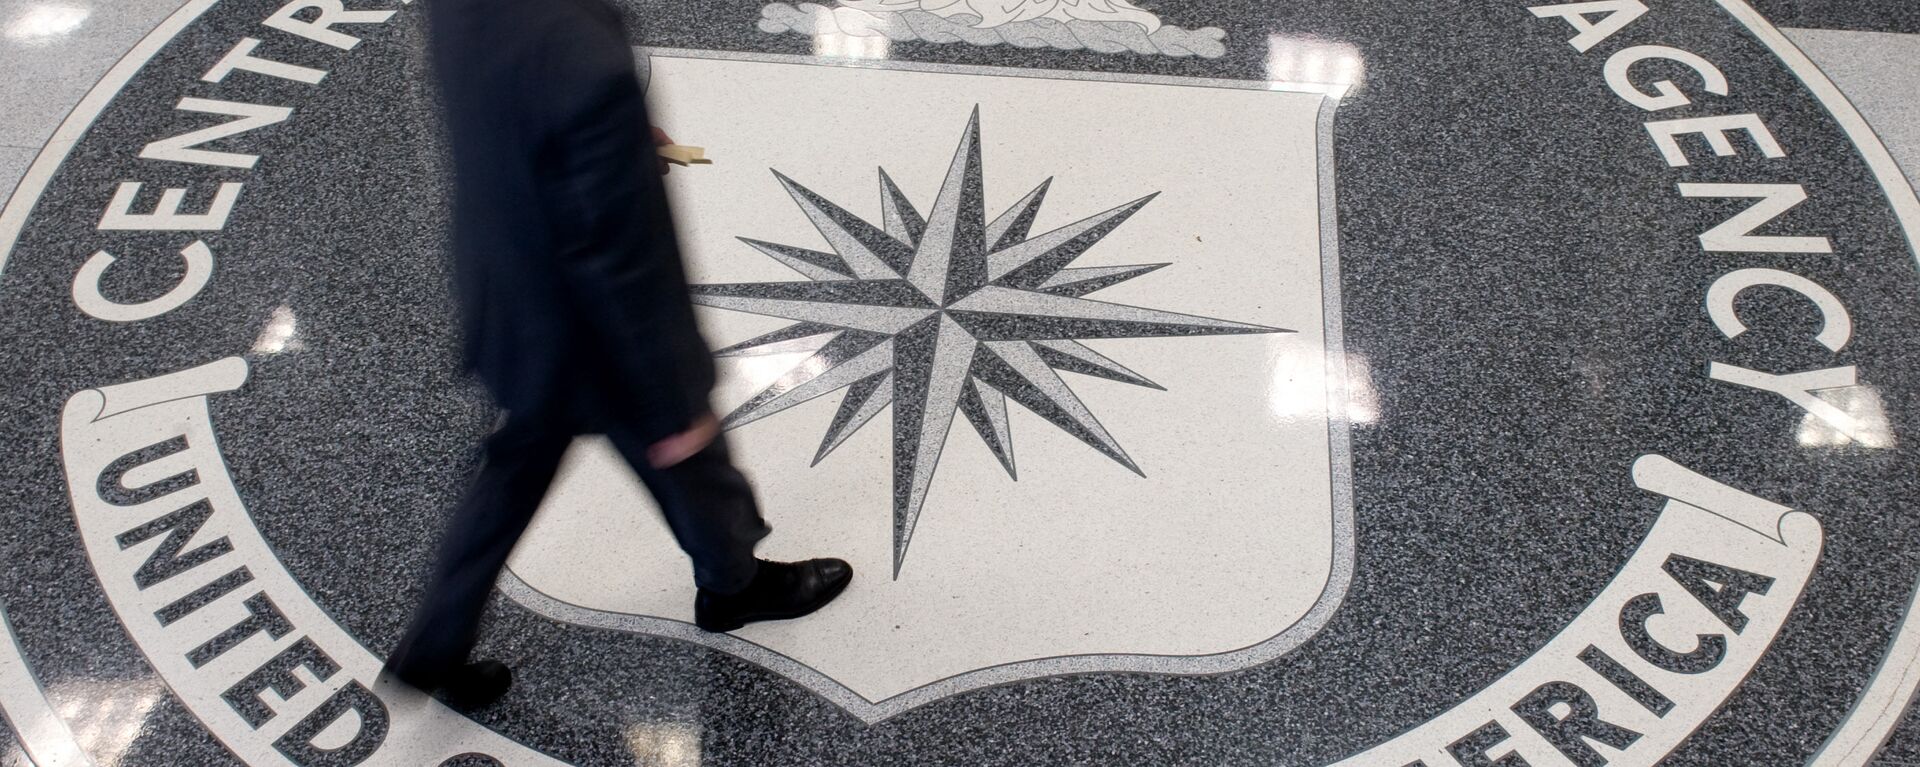 El logo de la CIA - Sputnik Mundo, 1920, 05.05.2021